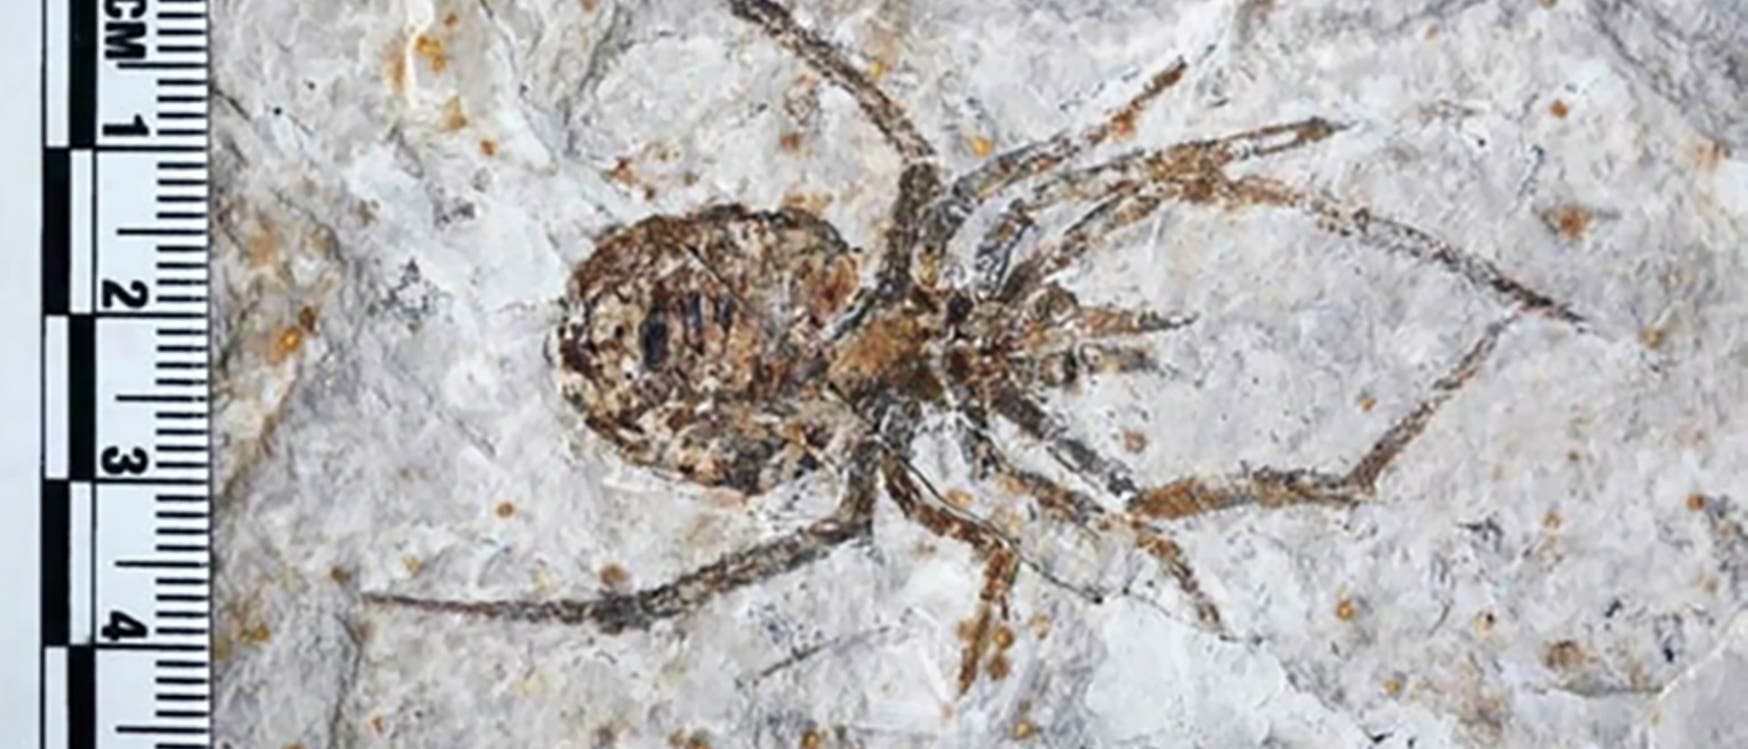 Dies ist keine Spinne. Es ist allerdings auch kein Surrealismus, sondern einfach eine gut gemachte Fälschung, die aussieht wie das Fossil einer Spinne.